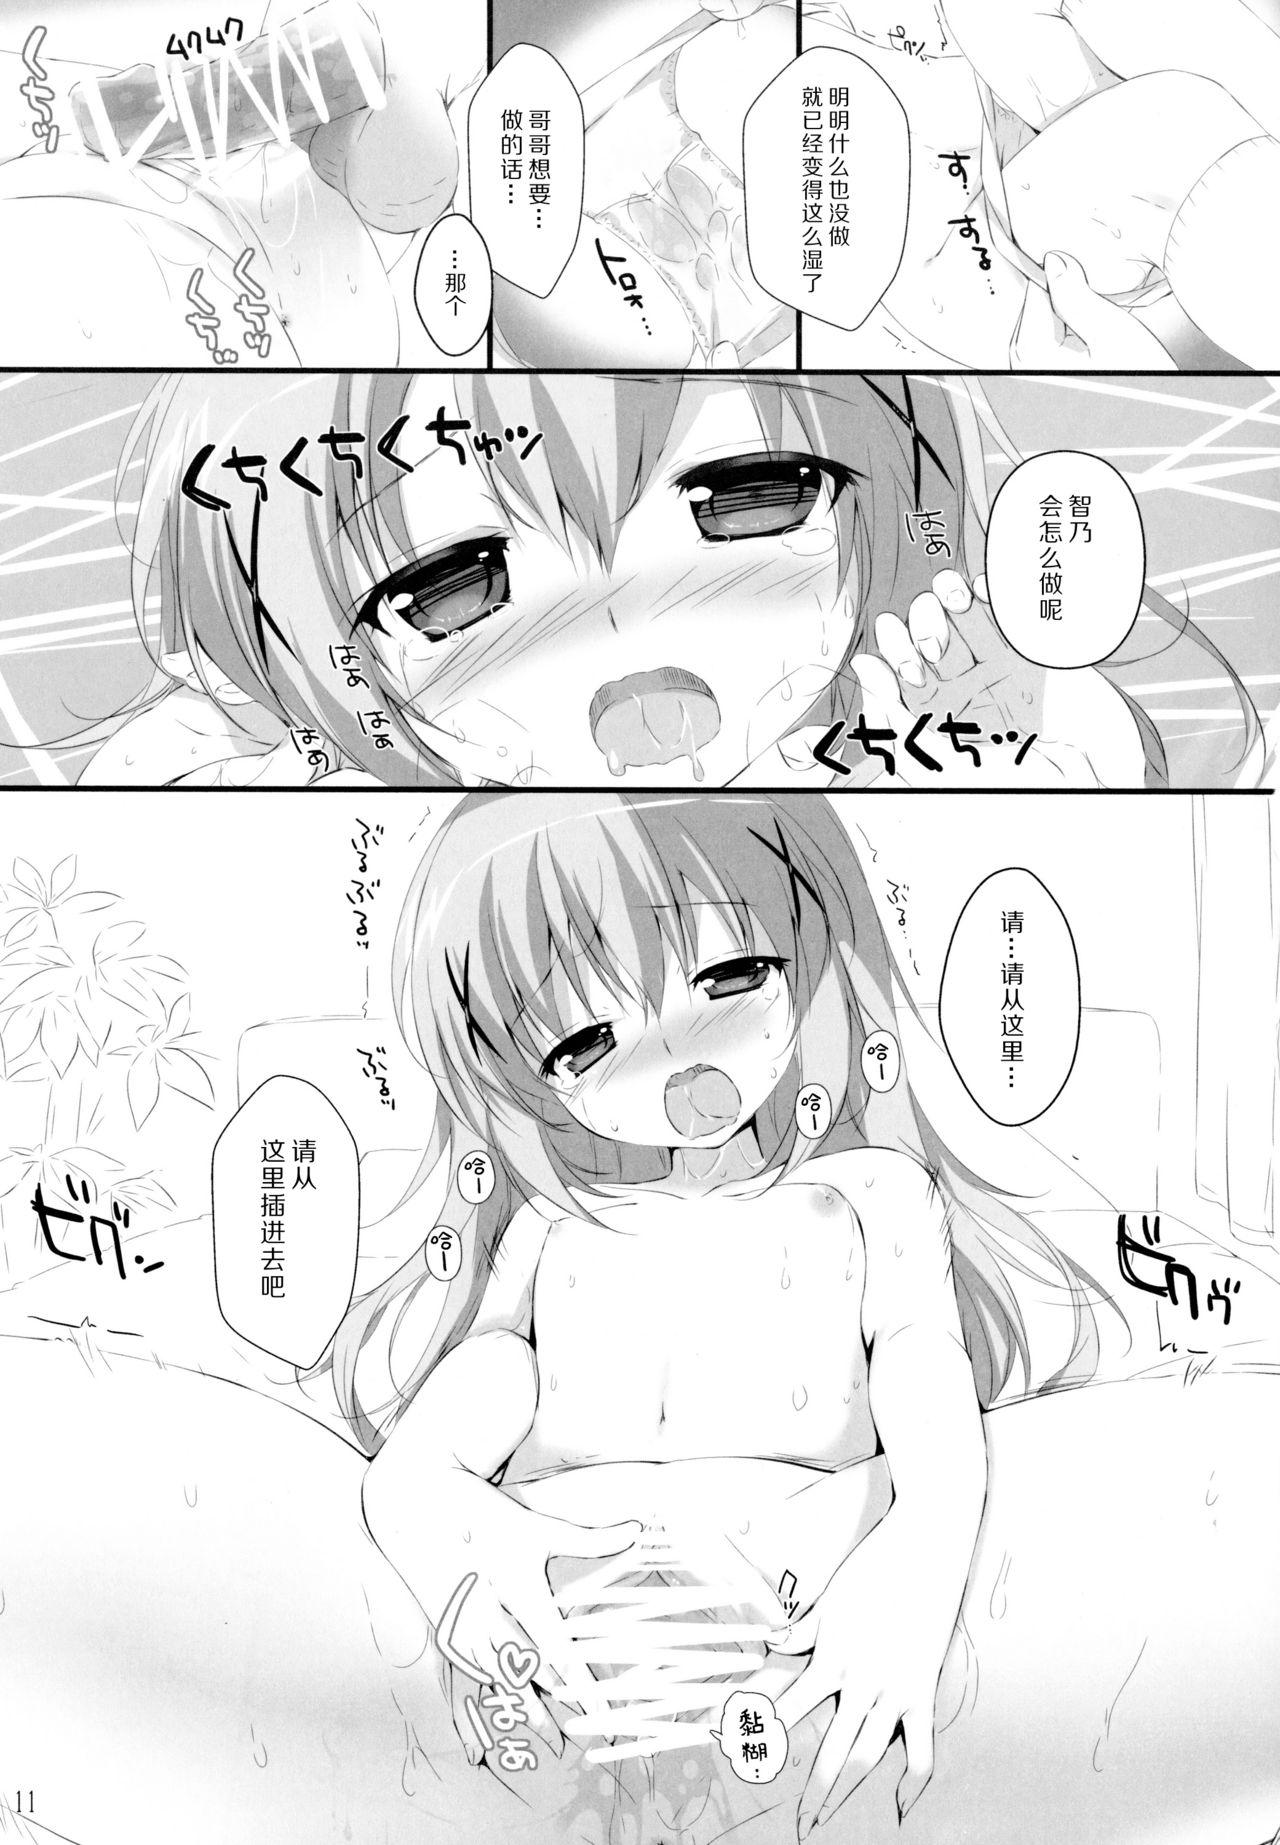 Nice Tits Kimi ni koi Shiteru 3 - Gochuumon wa usagi desu ka Gay Pissing - Page 11